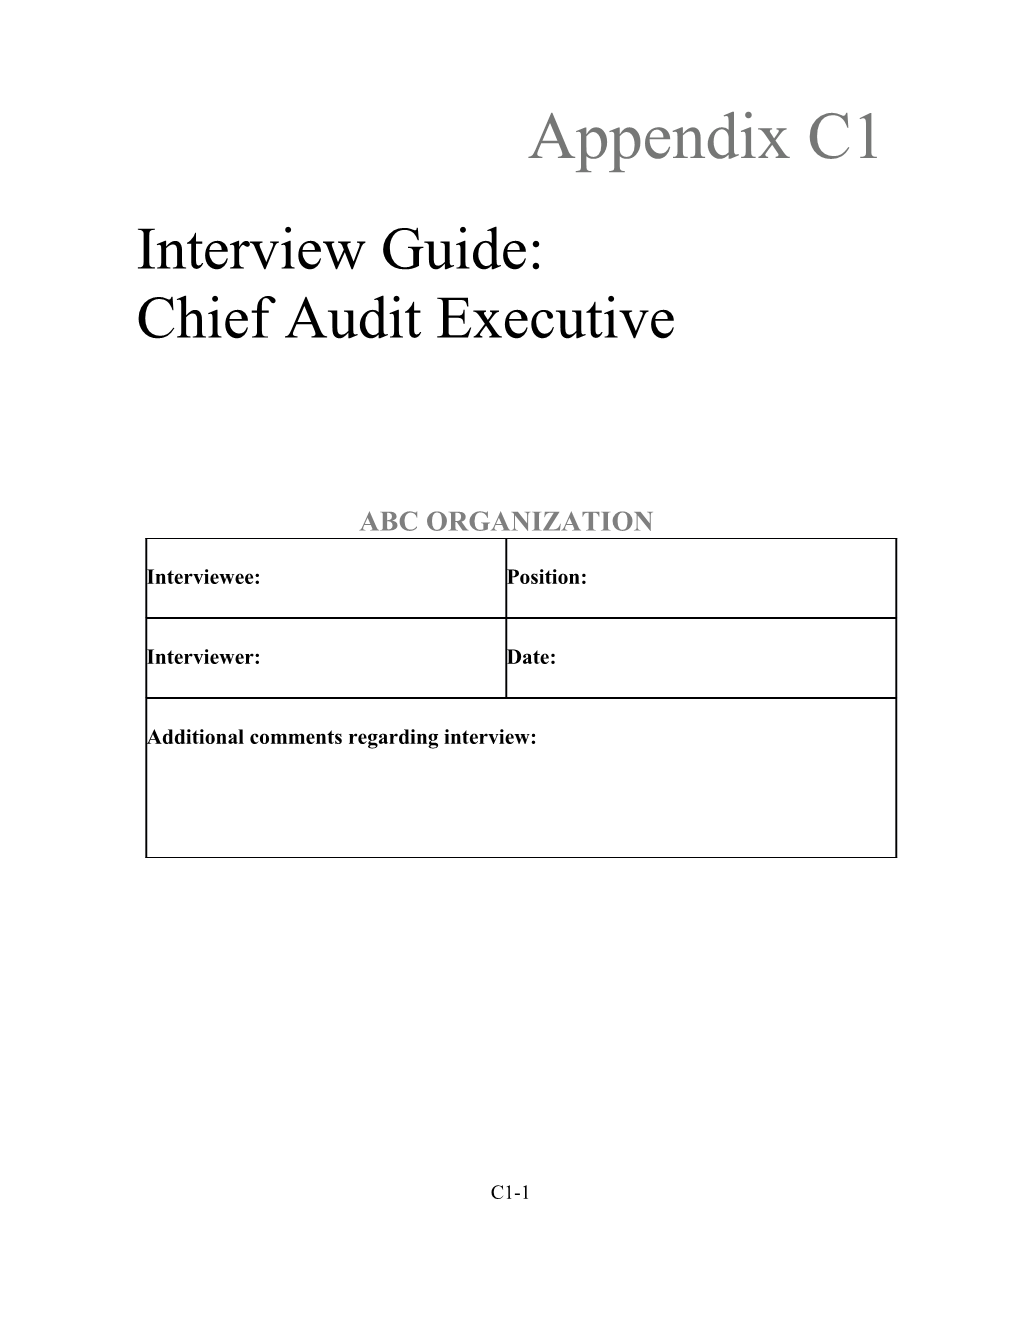 Appendix C1:Interview Guide: Chief Audit Executive